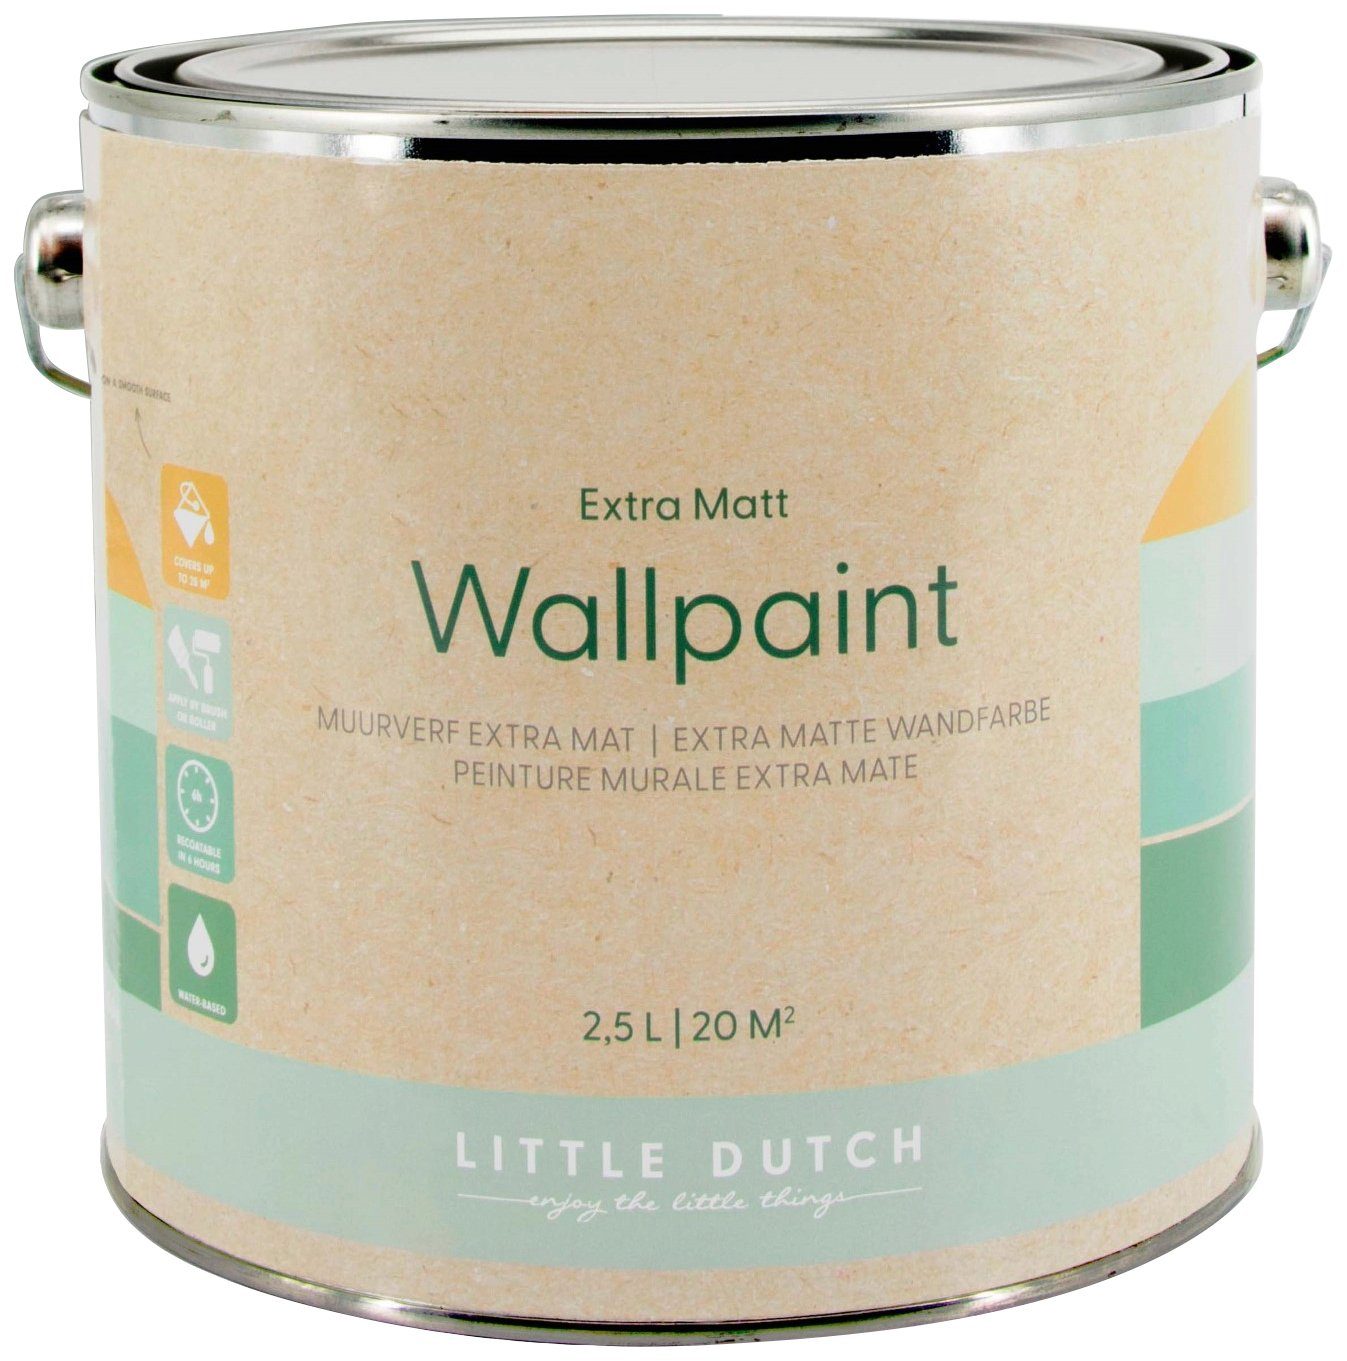 LITTLE DUTCH Wandfarbe Wallpaint, extra matt, hochdeckend und waschbeständig, für Kinderzimmer geeignet Dusty Grau | Dispersionsfarben